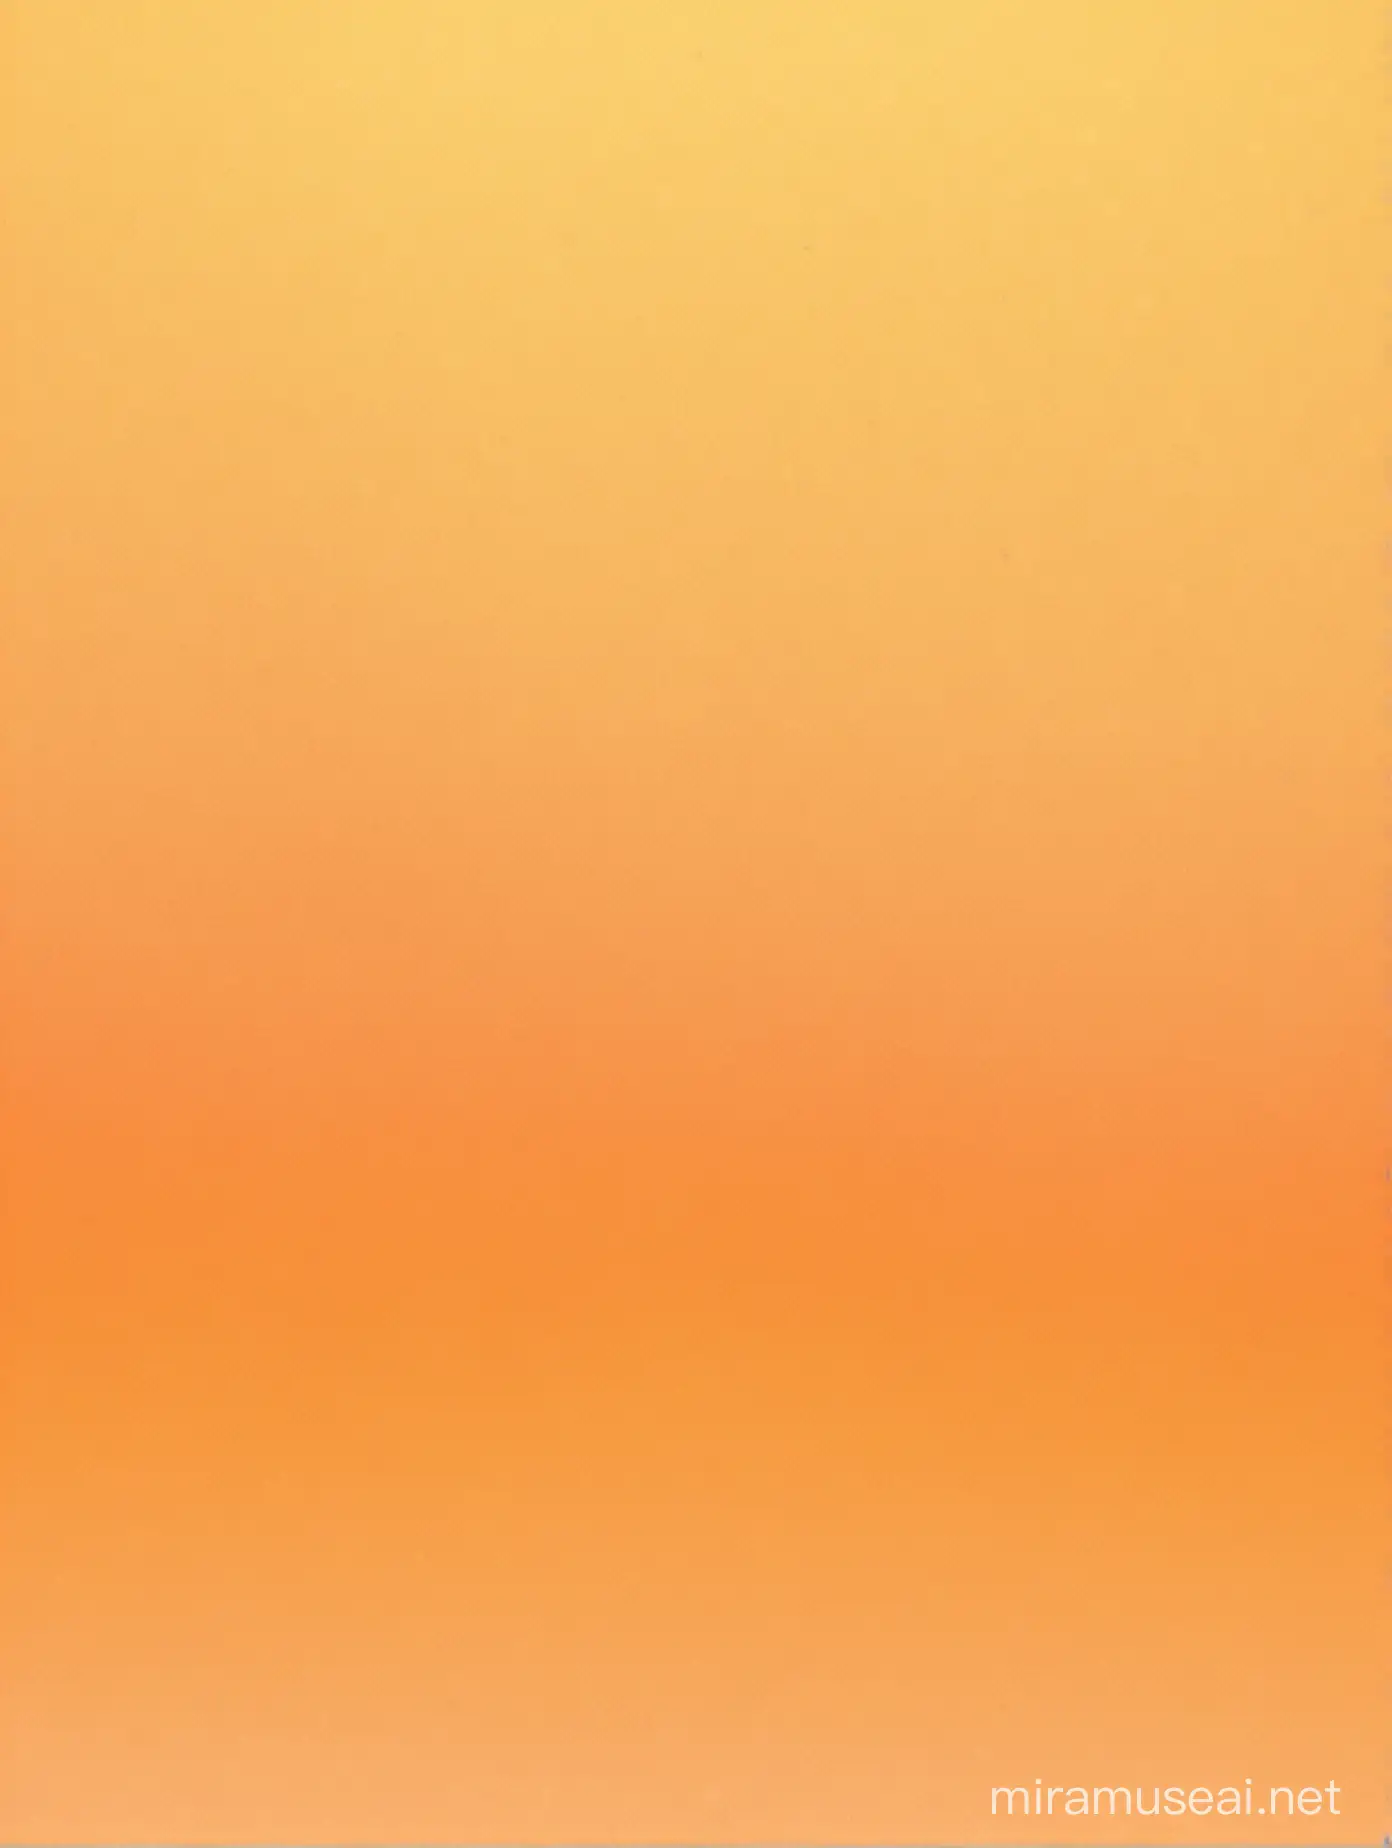 оранжевый желтый фон с градиентом